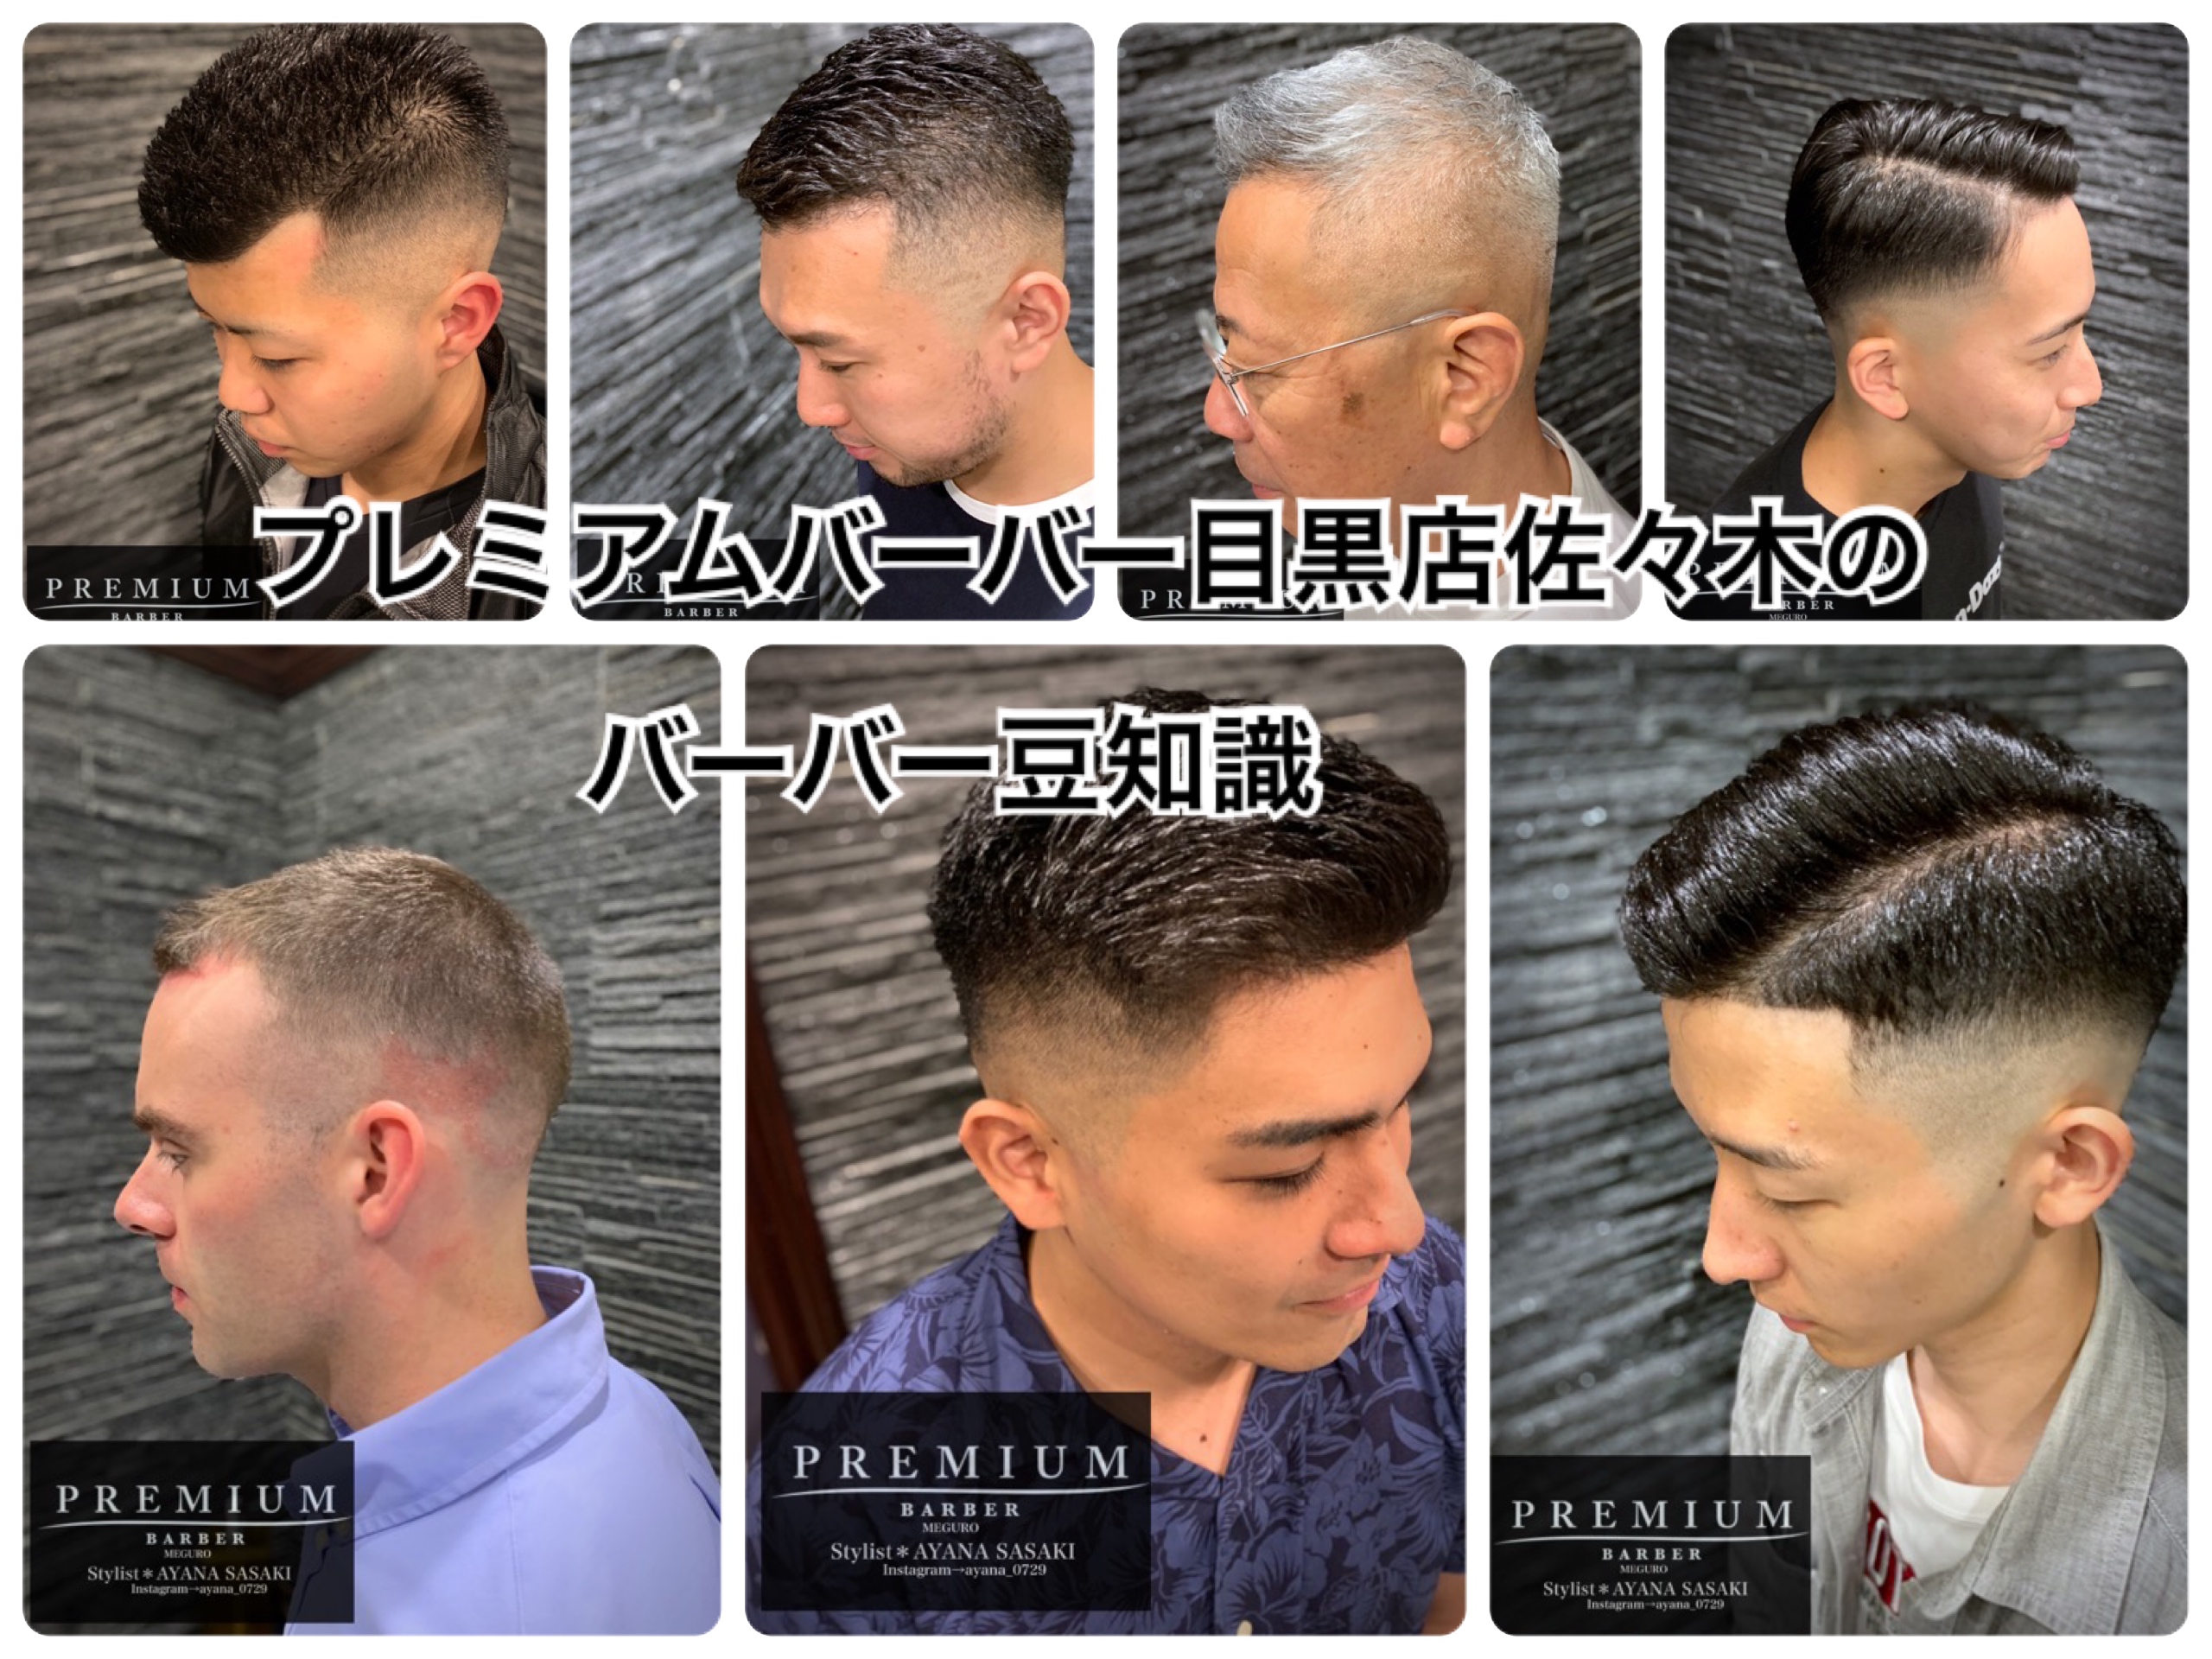 ラグビー選手の髪型 かっこいいバーバースタイル ブログ 渋谷 原宿店 高級理容室 床屋 ヘアサロン Premium Barber プレミアムバーバー